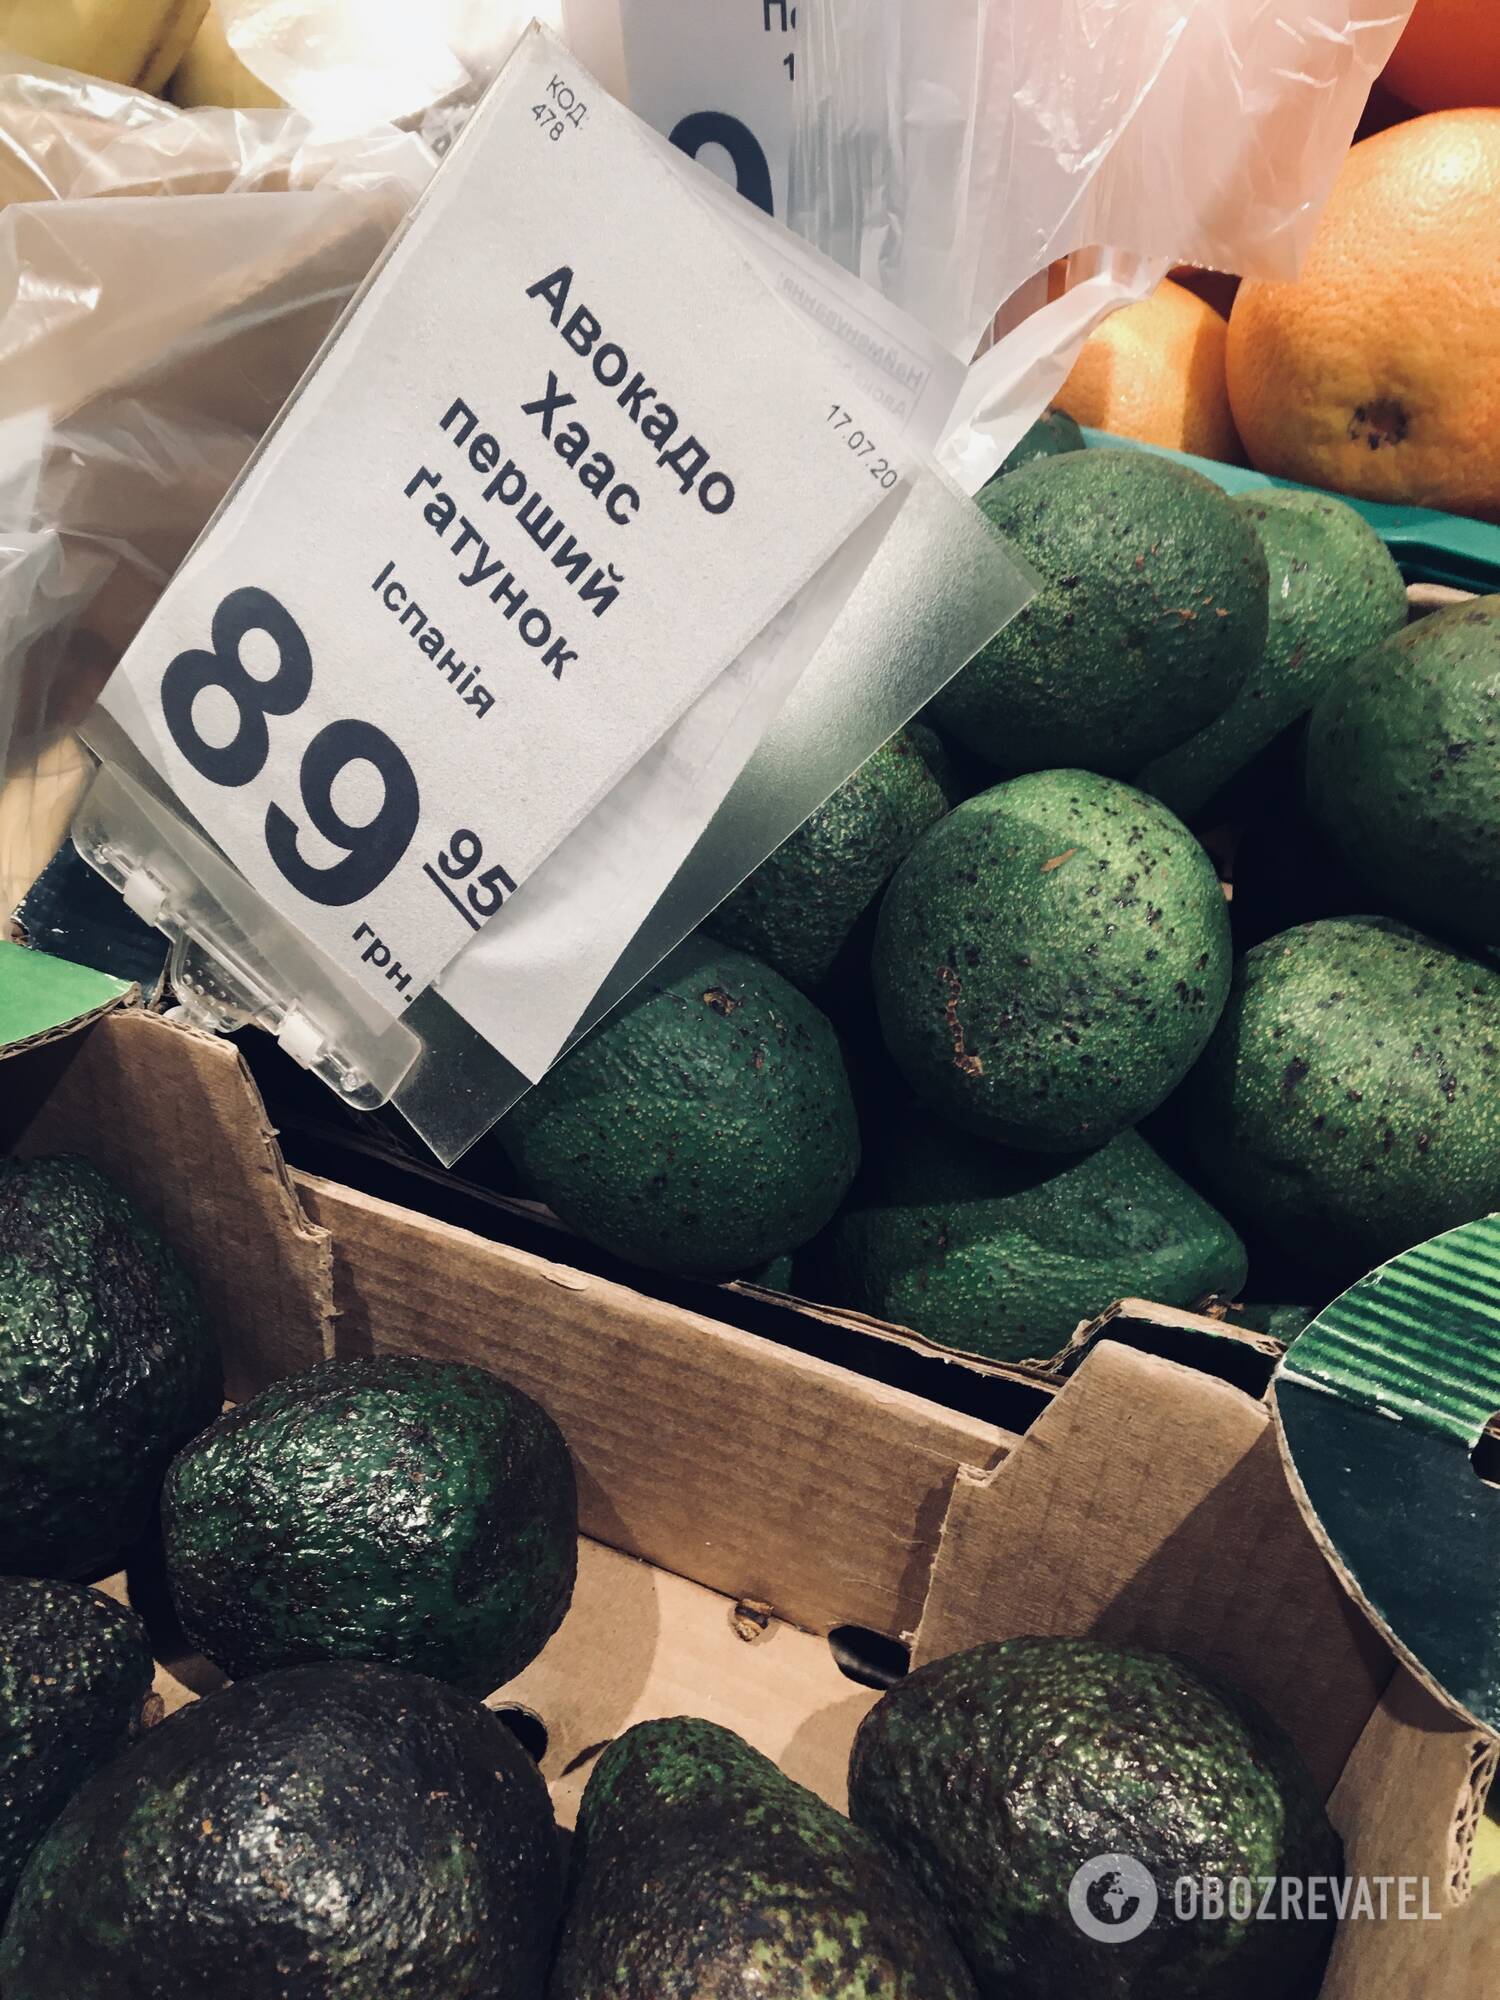 Цены на авокадо в супермаркетах не отличаются